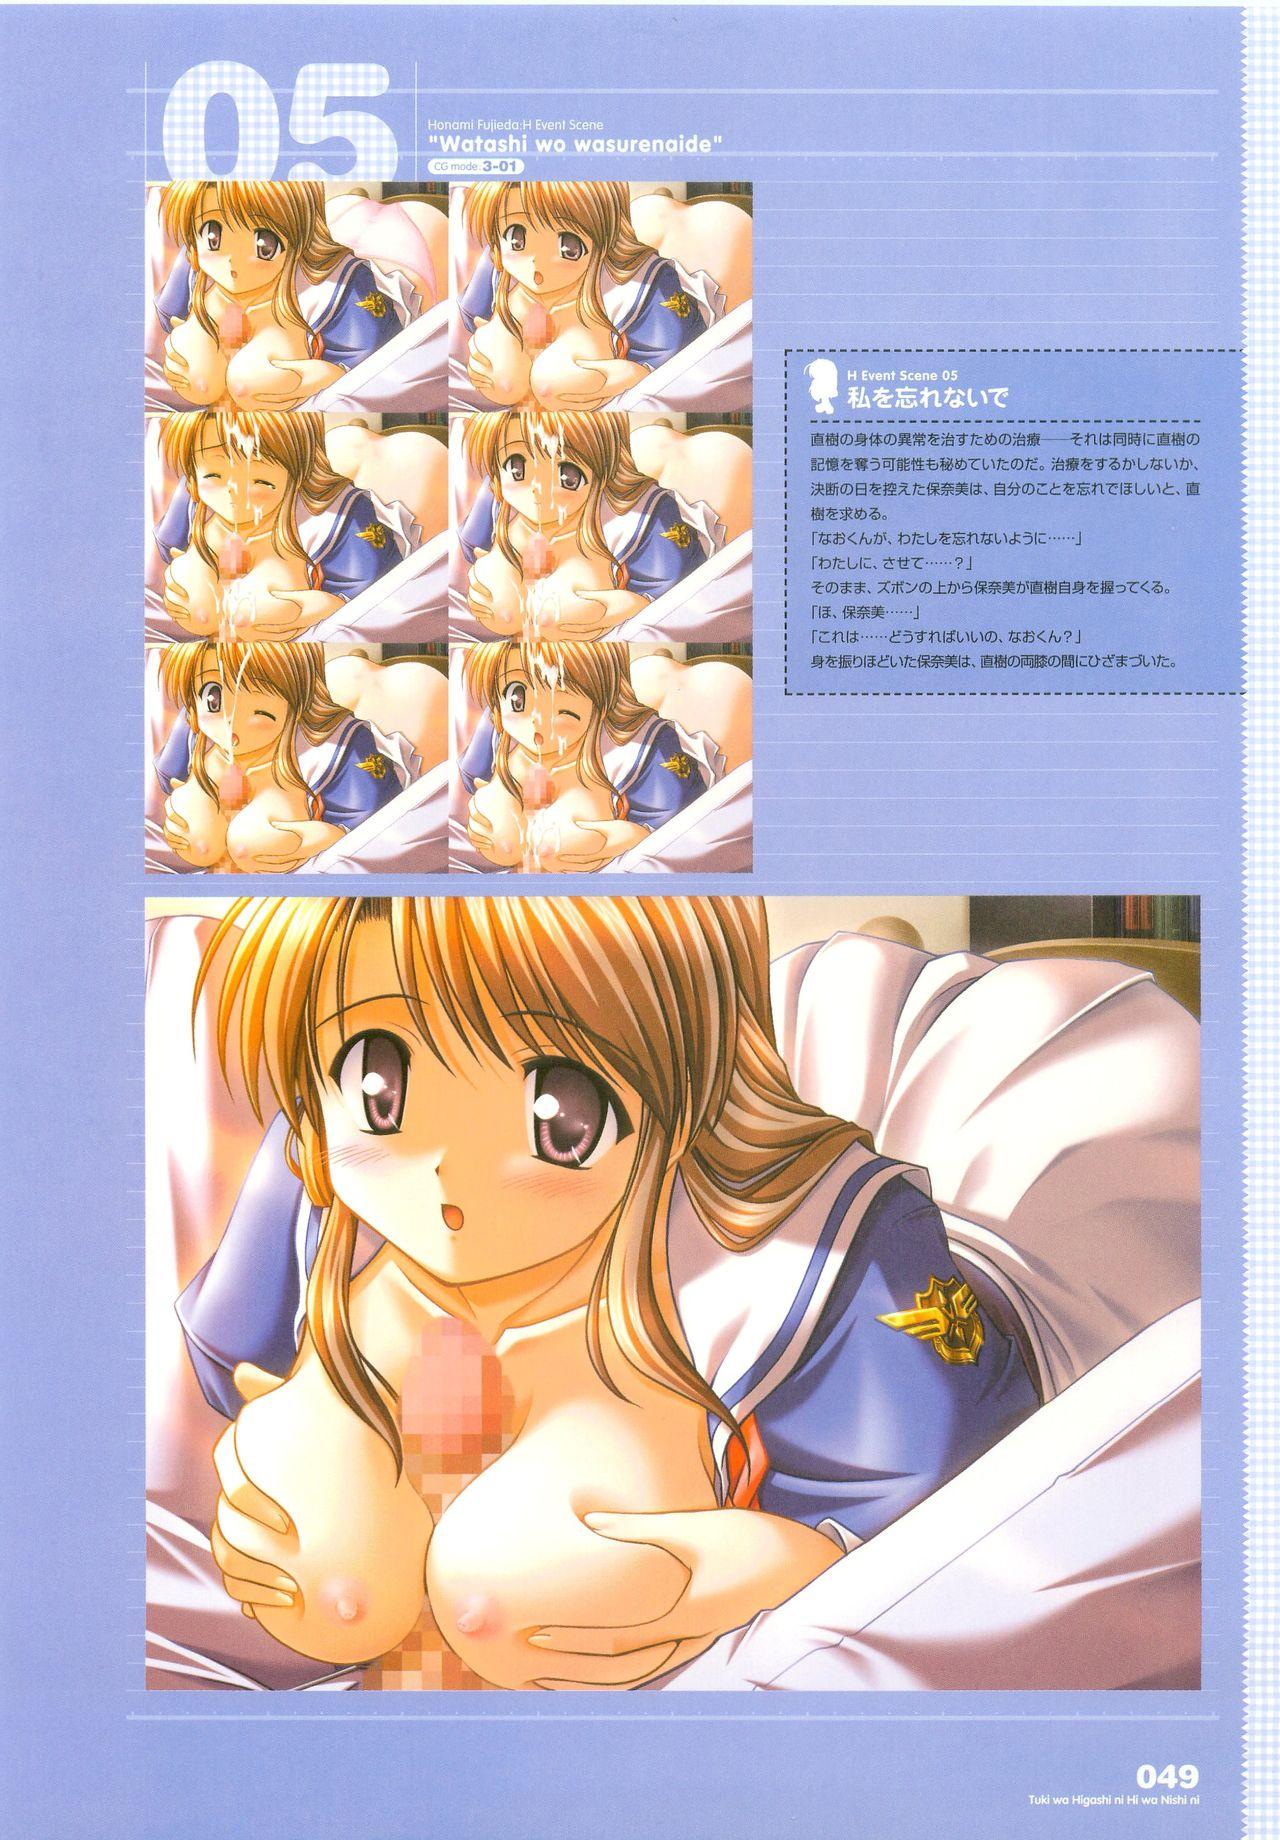 Tsuki wa Higashi ni Hi wa Nishi ni - Operation Sanctuary - Visual Fan Book Shokai Ban 65